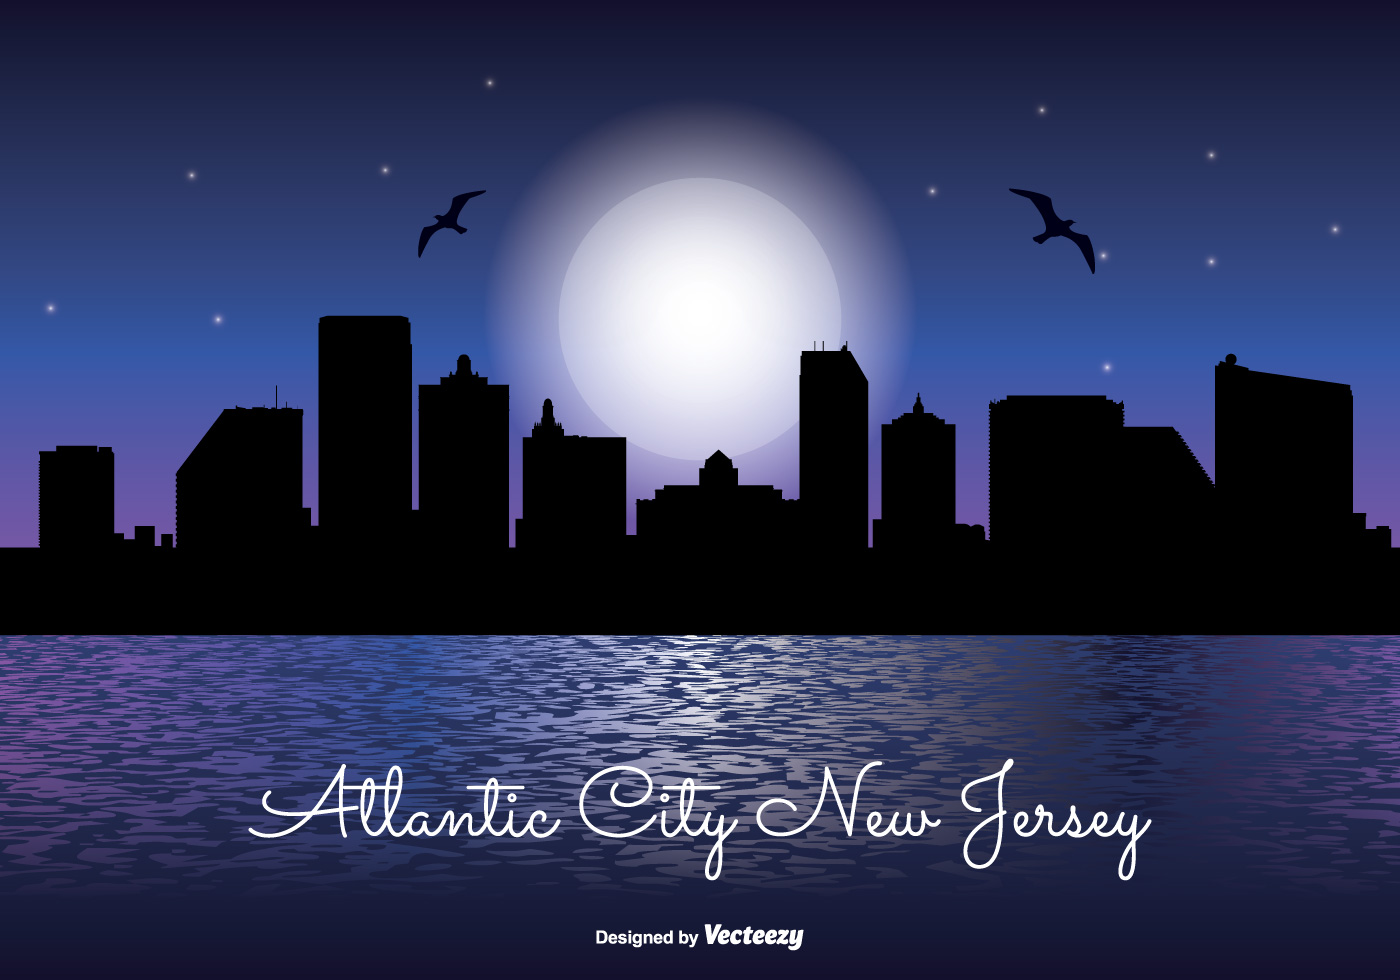 Download Atlantic City Night Skyline - Download Free Vector Art ...